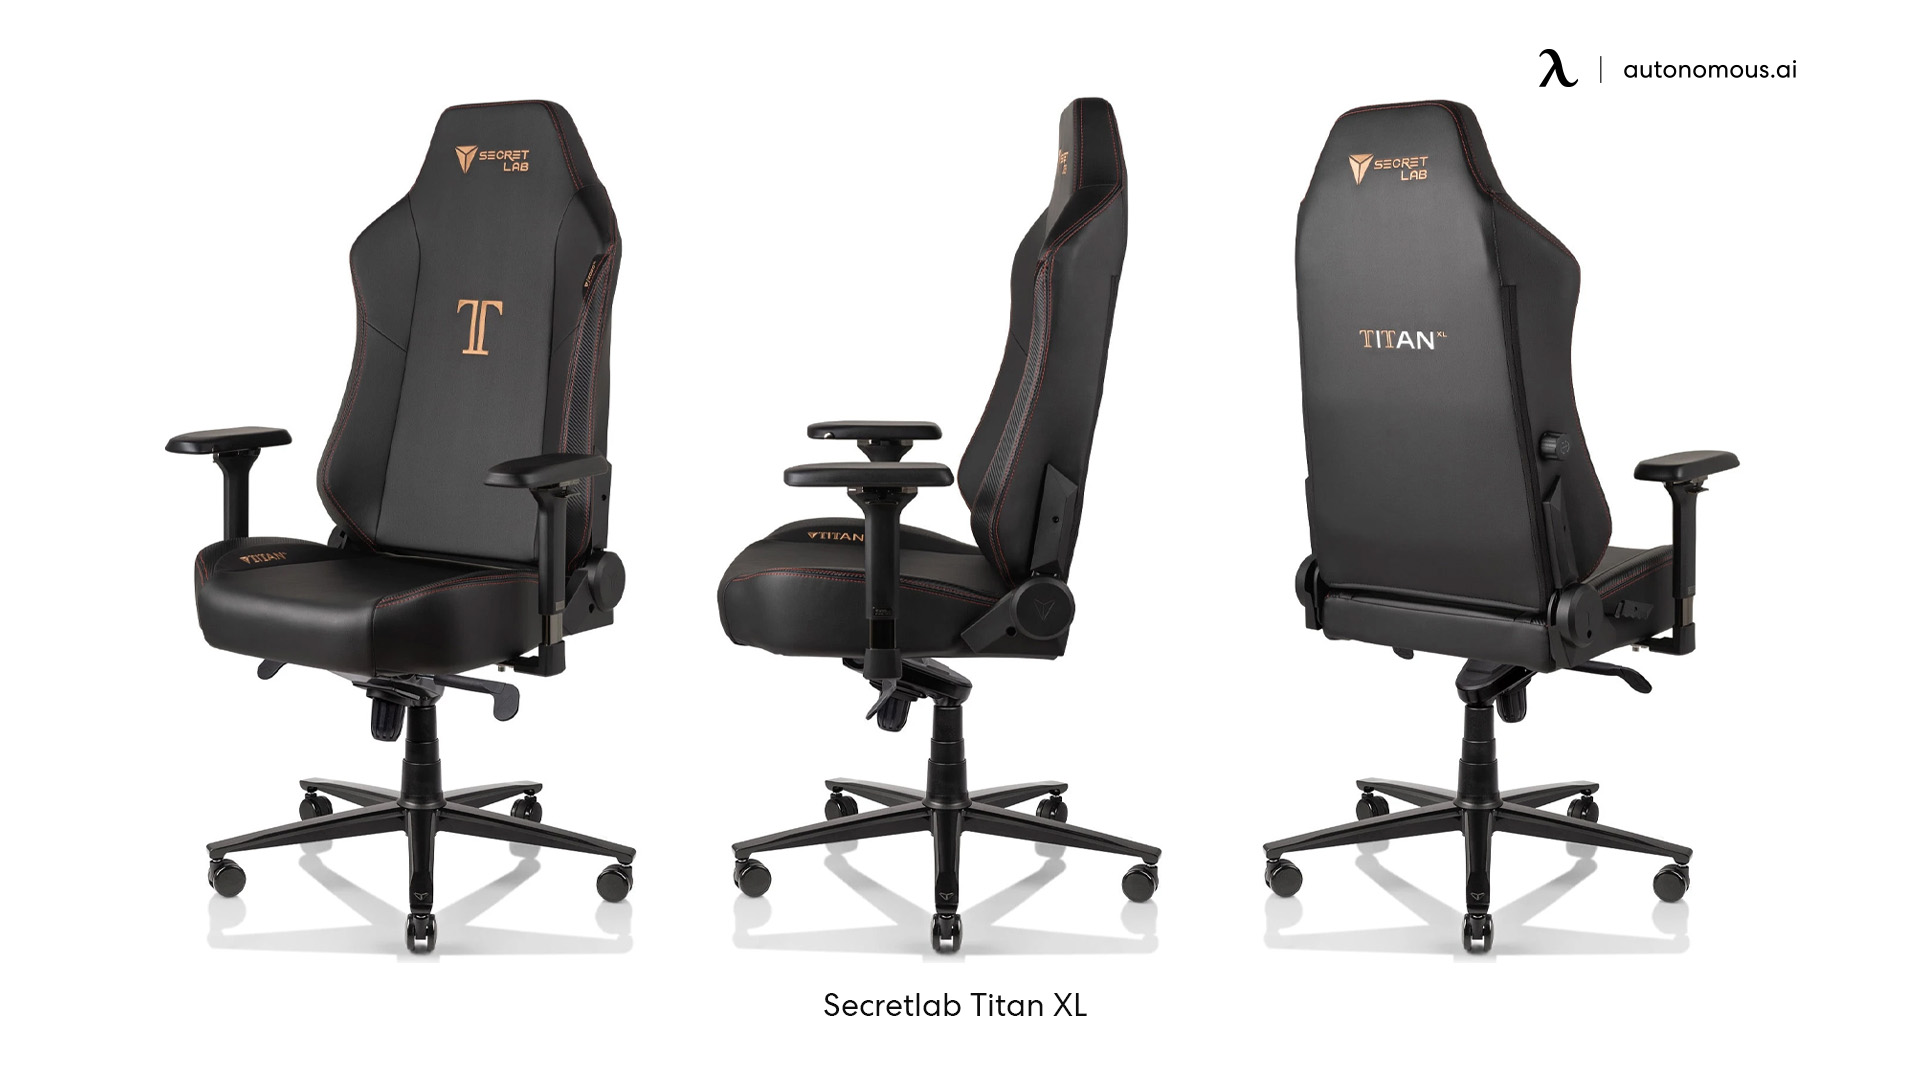 Secretlab Titan XL tall office chair